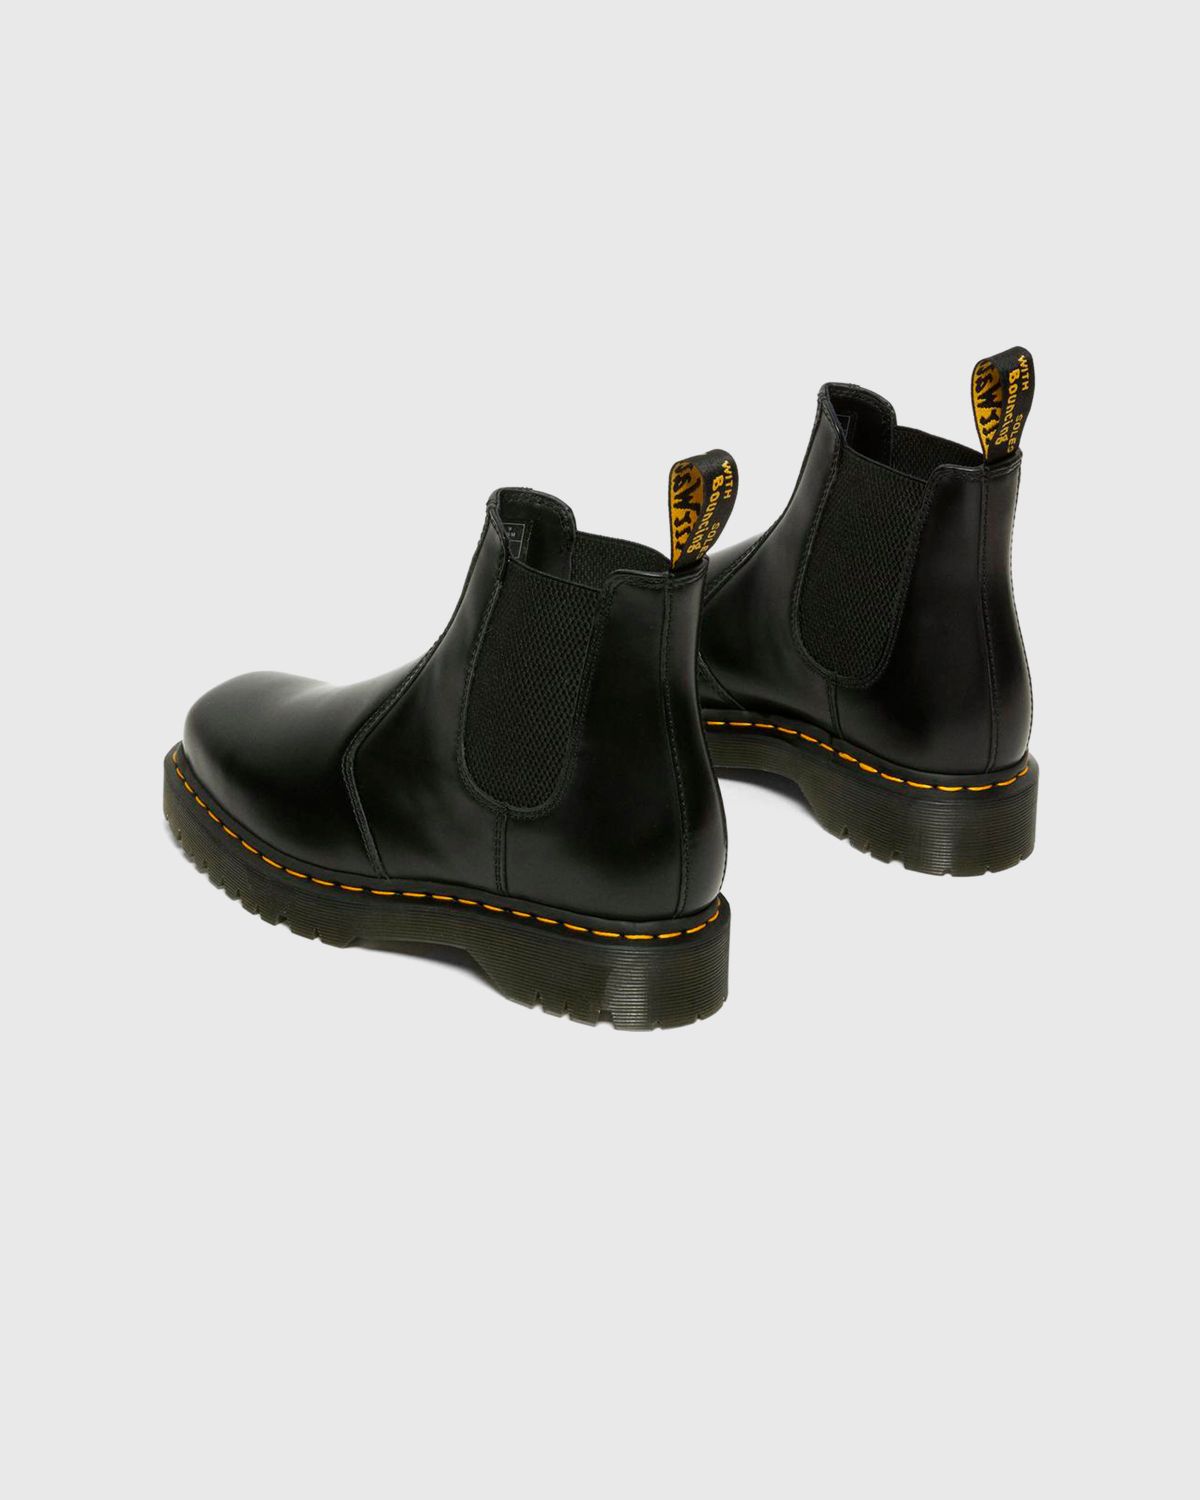 Dr. Martens – 2976 Bex Squared Black Polished Smooth - Shoes - Black - Image 4